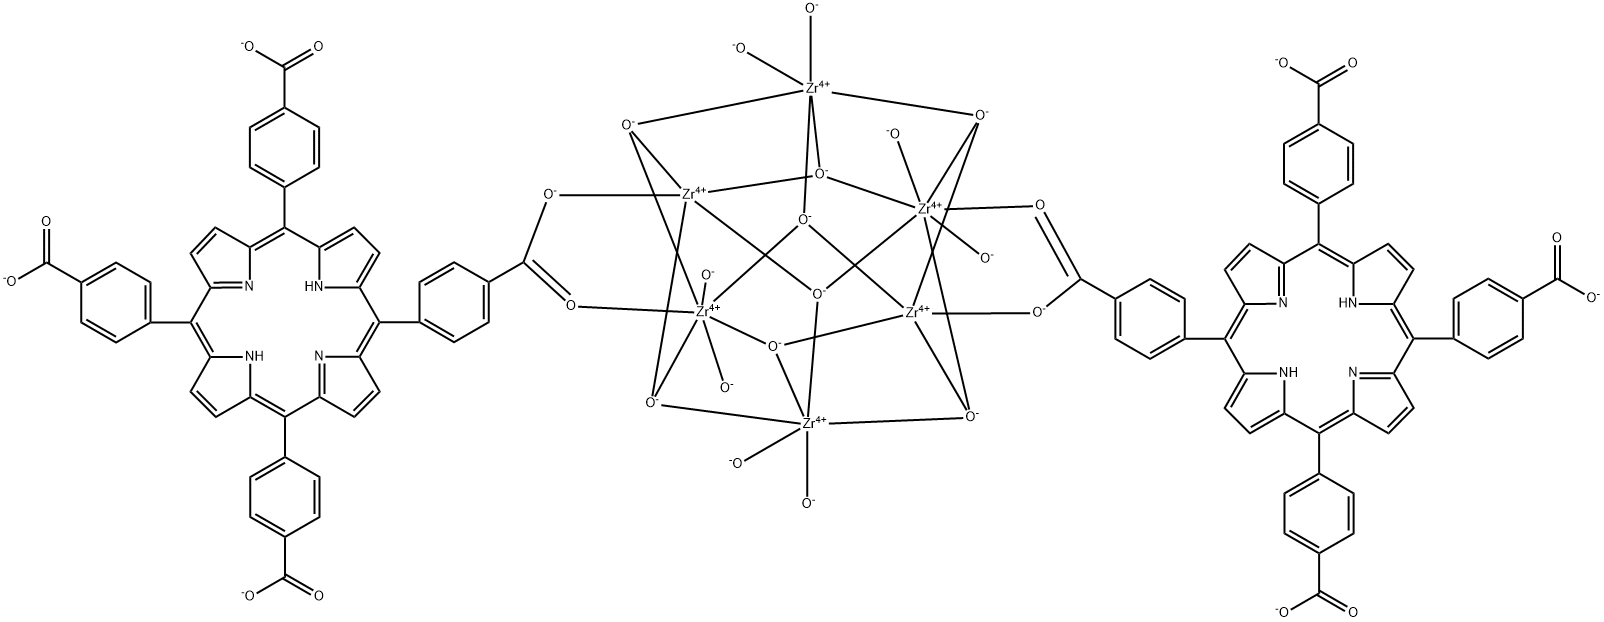 Zirconium, octa-μ -hydroxyoctahydroxybis[μ-[4-[10,15,20-tris(4-carboxyphenyl)-21H,23H-porphin-5-yl]benzoato(4-)-κO:κO']]hexa- Structure